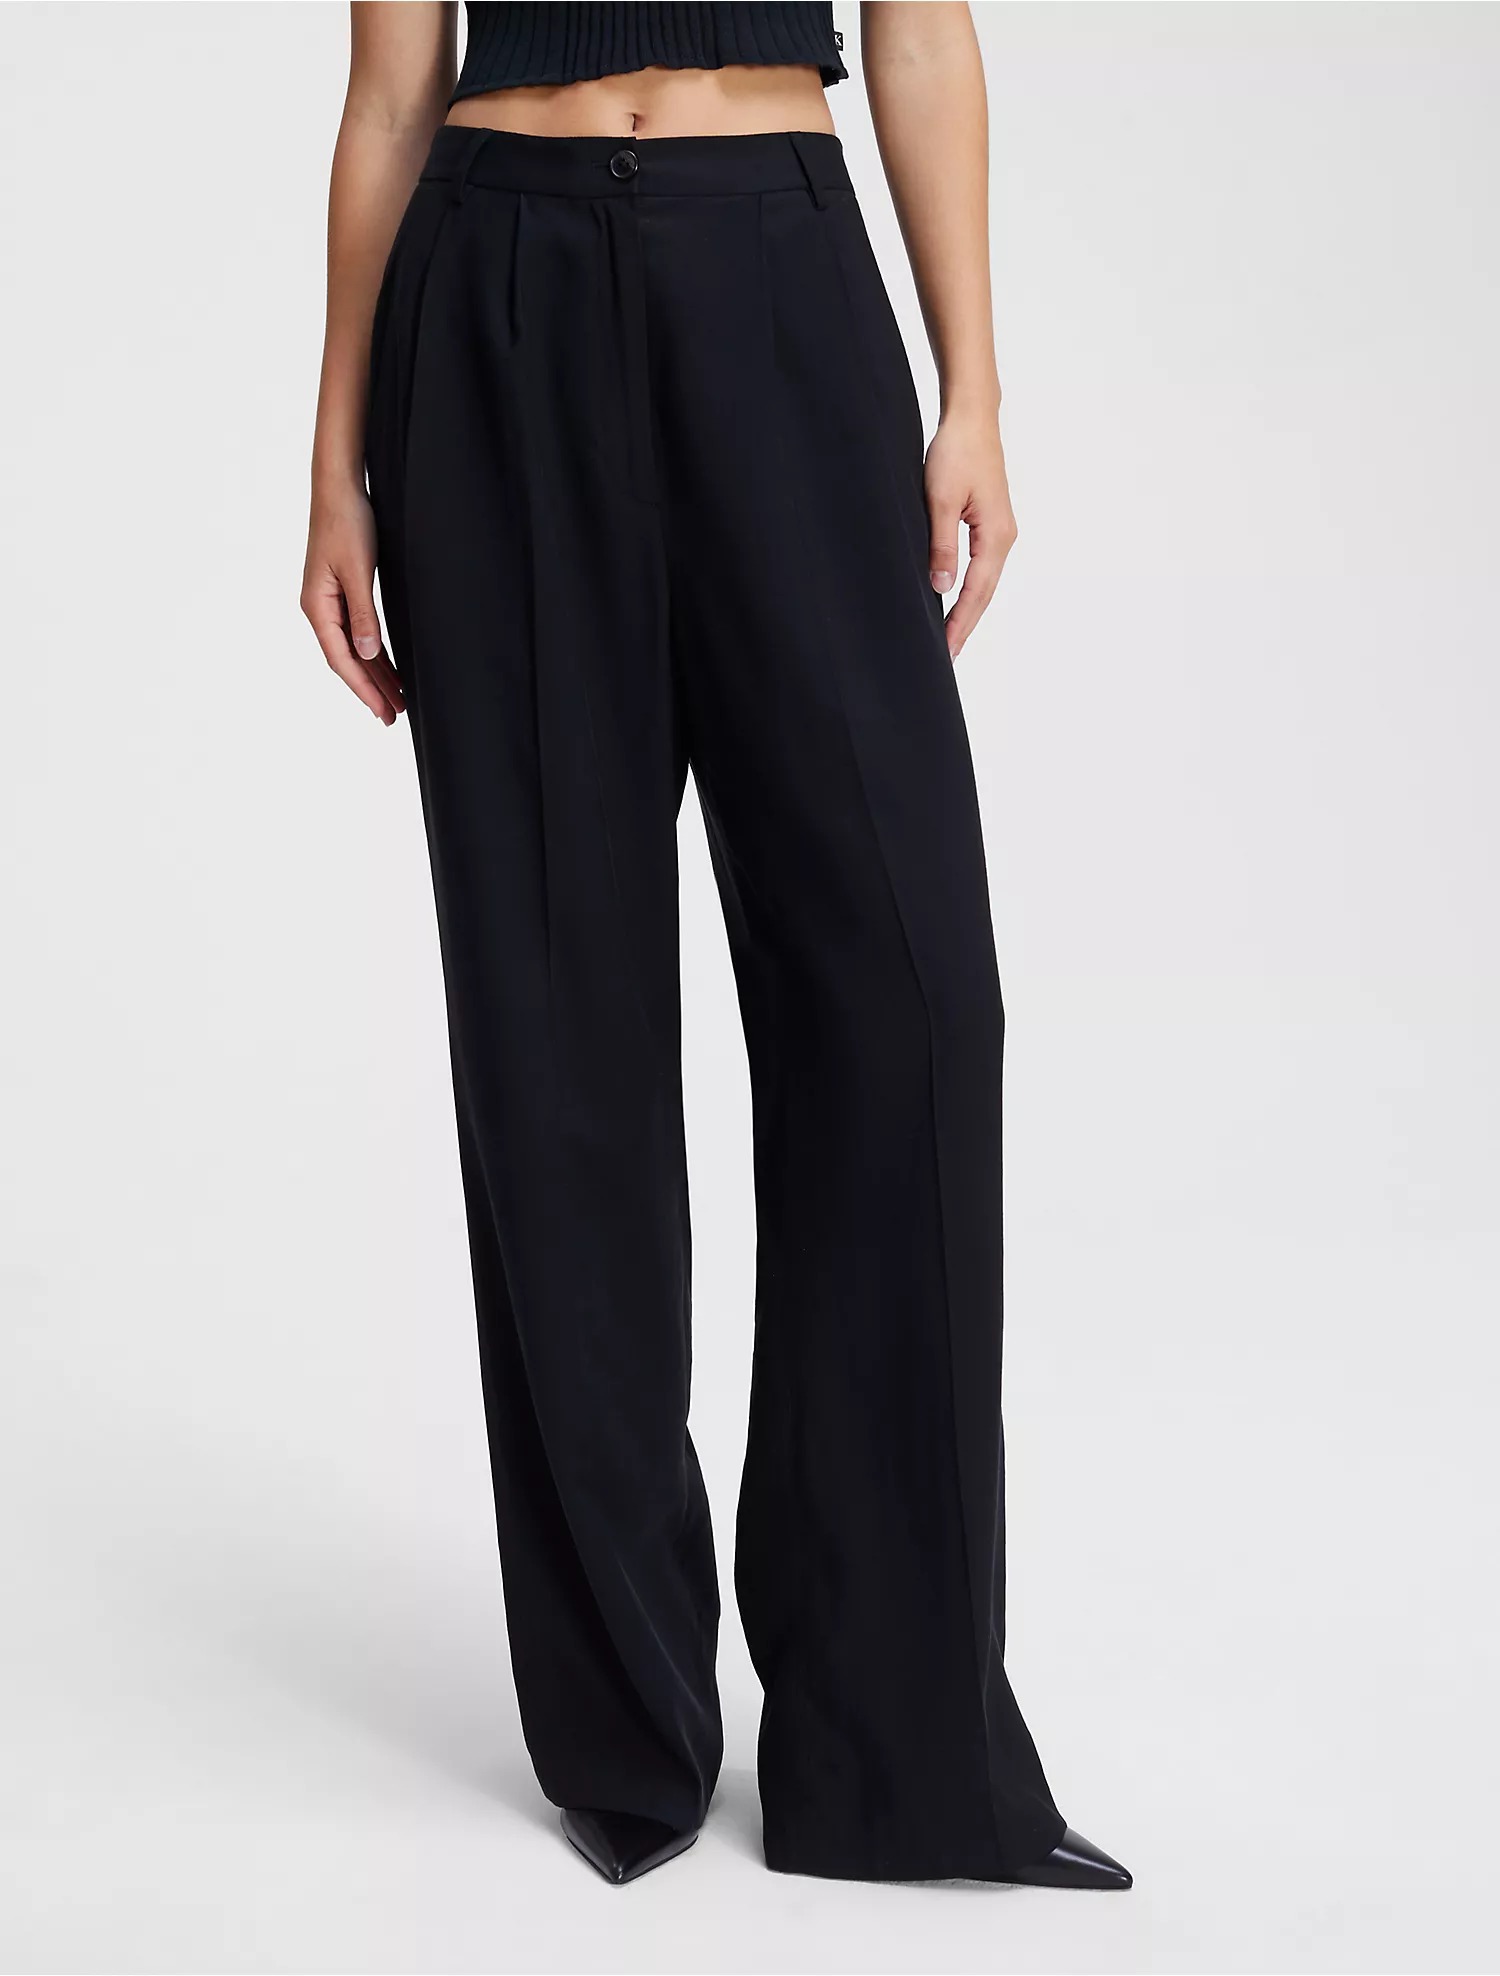 Брюки Calvin Klein Soft Twill Relaxed, черный брюки женские прямые с завышенной талией базовые цветные непрозрачные драпированные повседневные белые брюки с широкими штанинами подхо